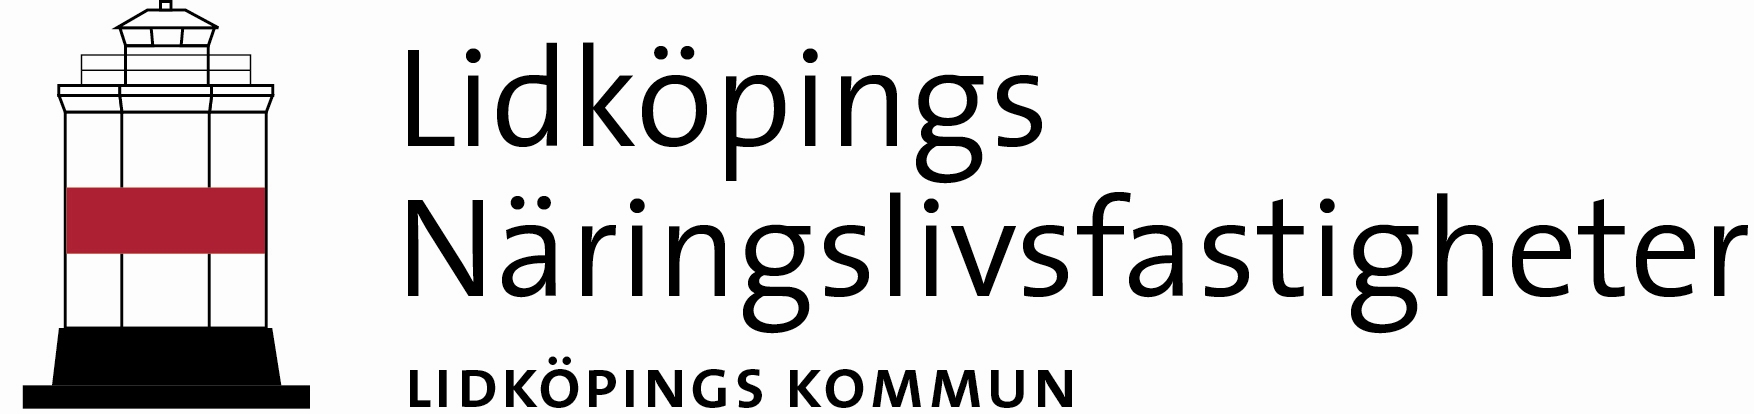 Lidköpings Näringslivsfastigheter LIDKÖPINGS KOMMUN